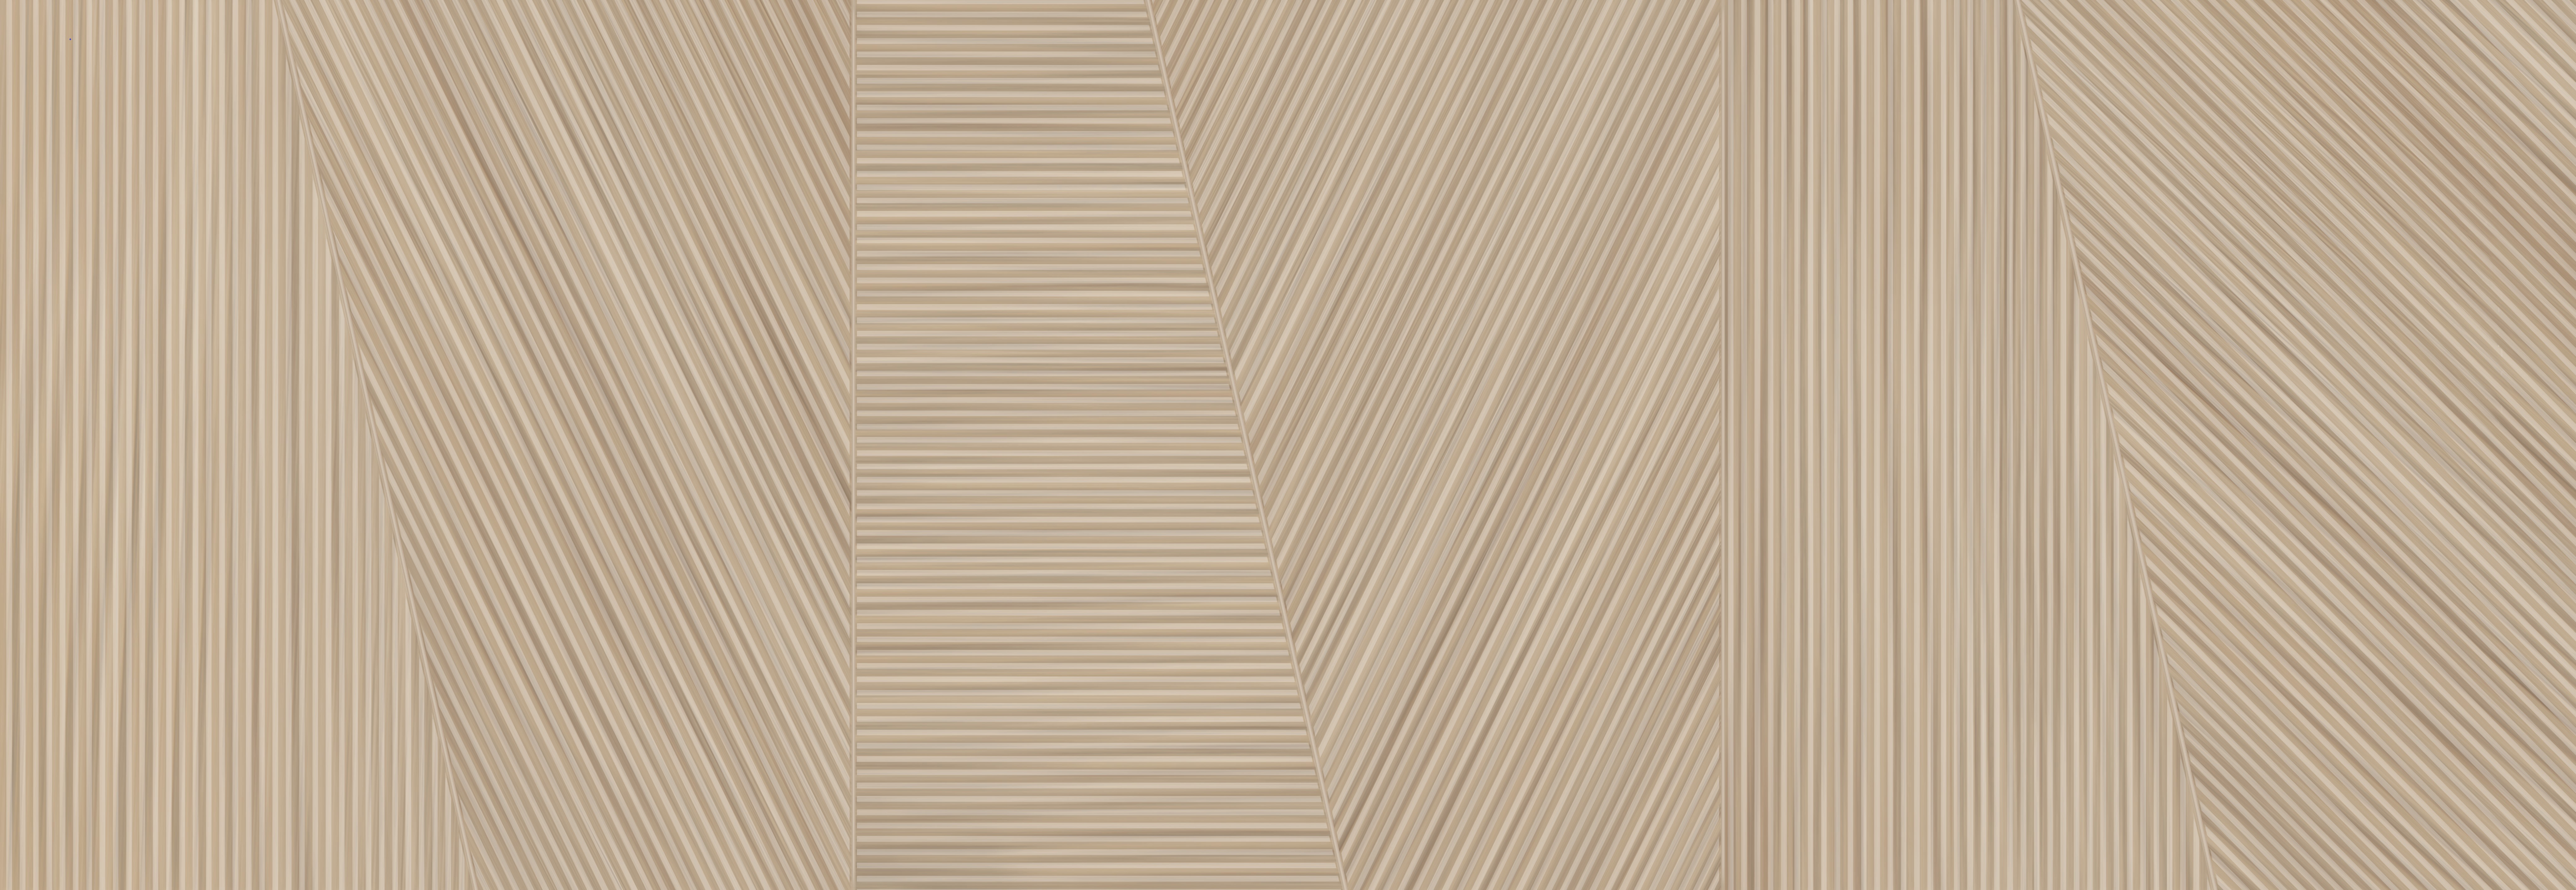 91090623 Керамическая плитка Legno Noce 24.2x70см 1.19 м² цвет коричневый STLM-0478855 КЕРЛАЙФ